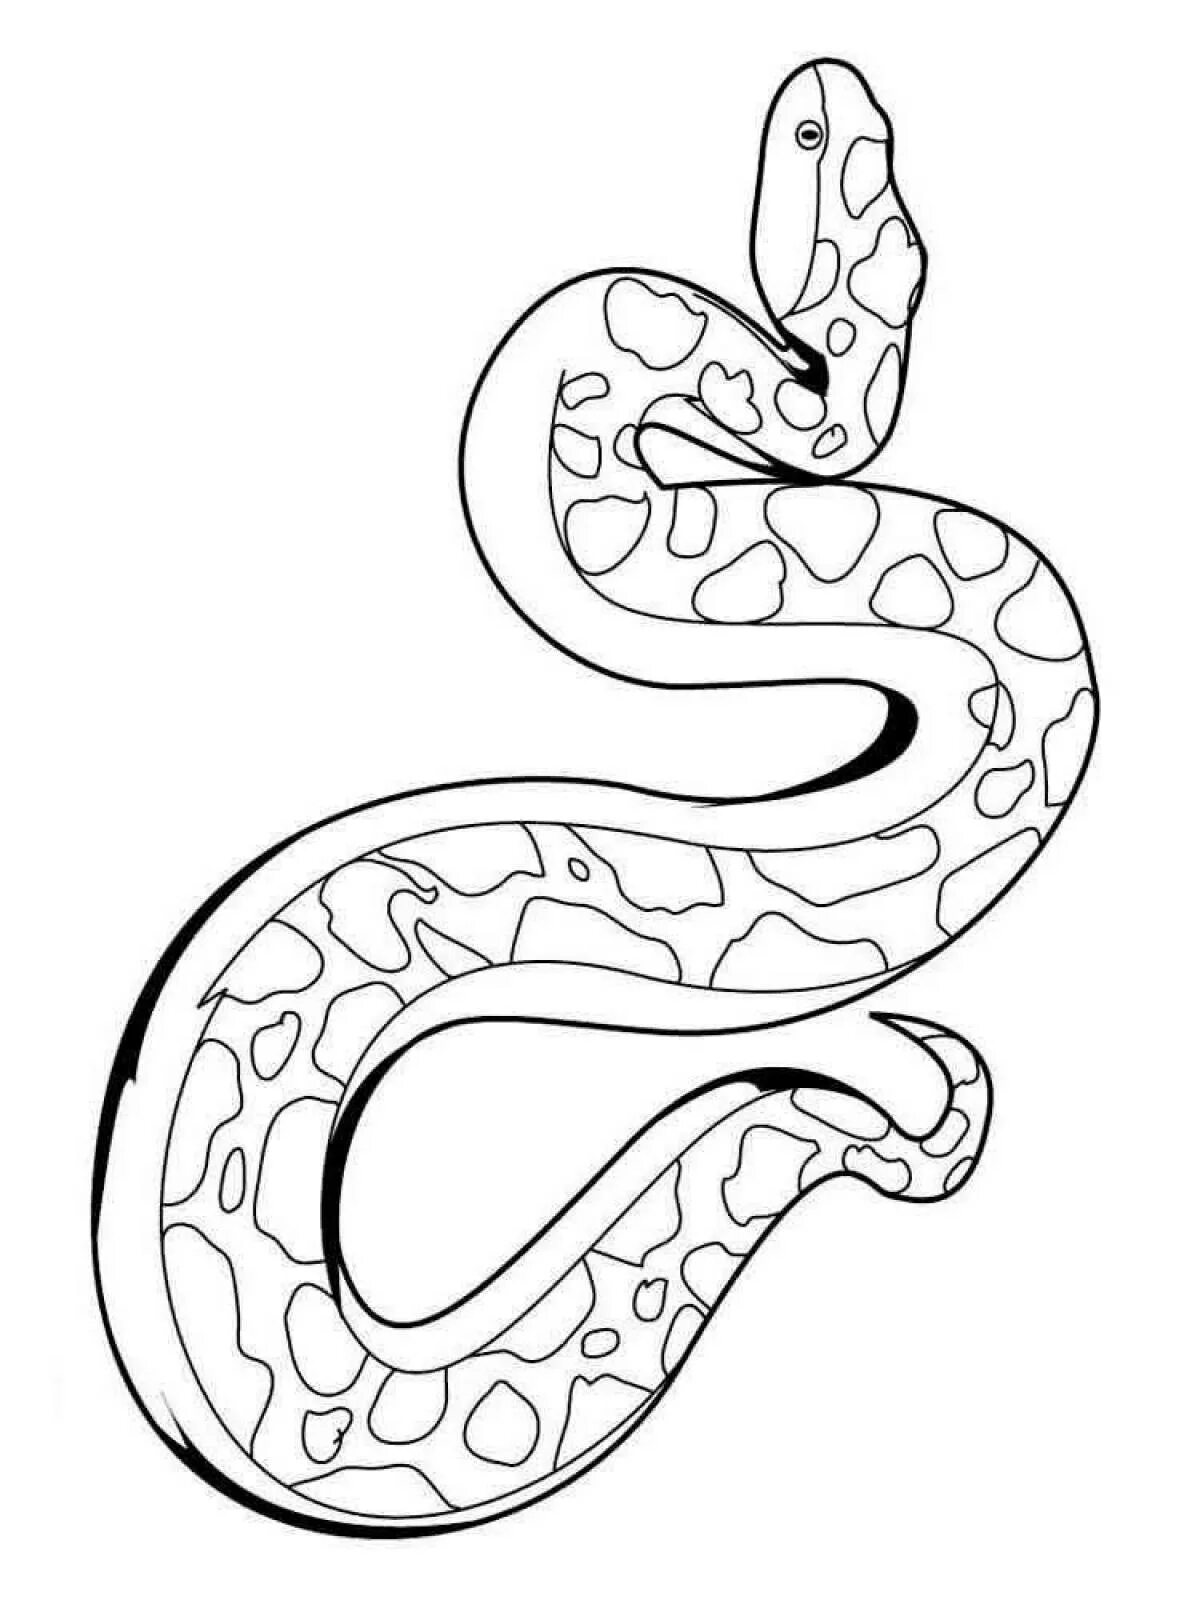 Раскраски змей распечатать. Королевский питон раскраска. Змея раскраска. Змея раскраска для детей. Раскраска змеи для детей.